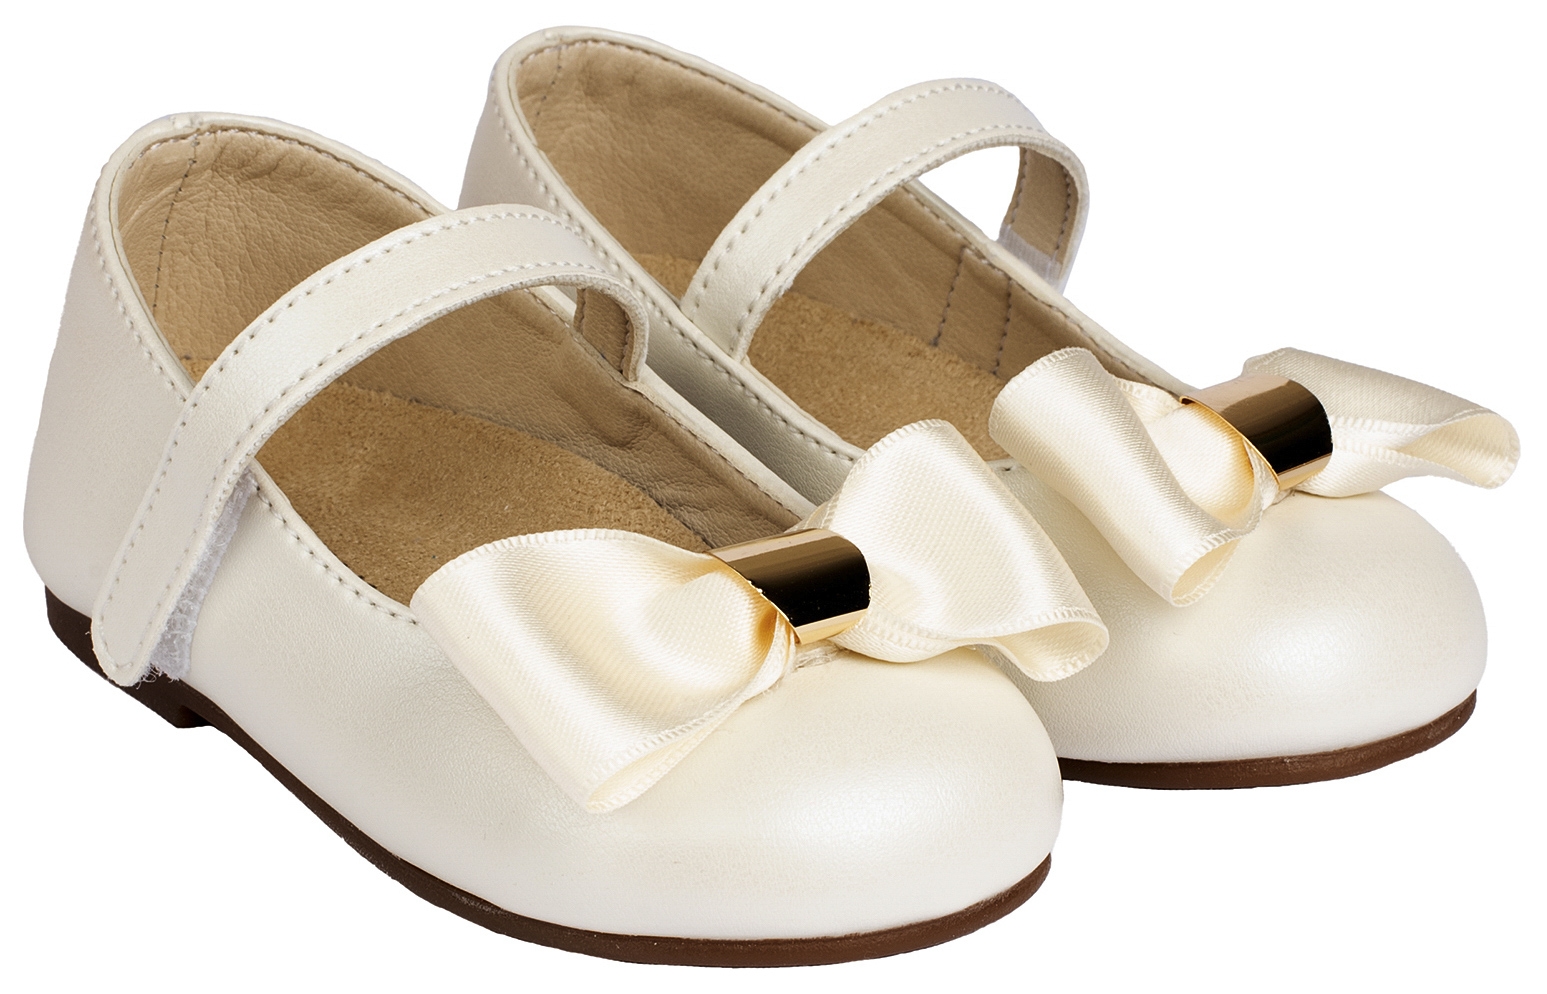 βαπτιστικό παιδικό παπούτσι για κορίτσι φιόγκος χρυσό μεταλλικό : 1